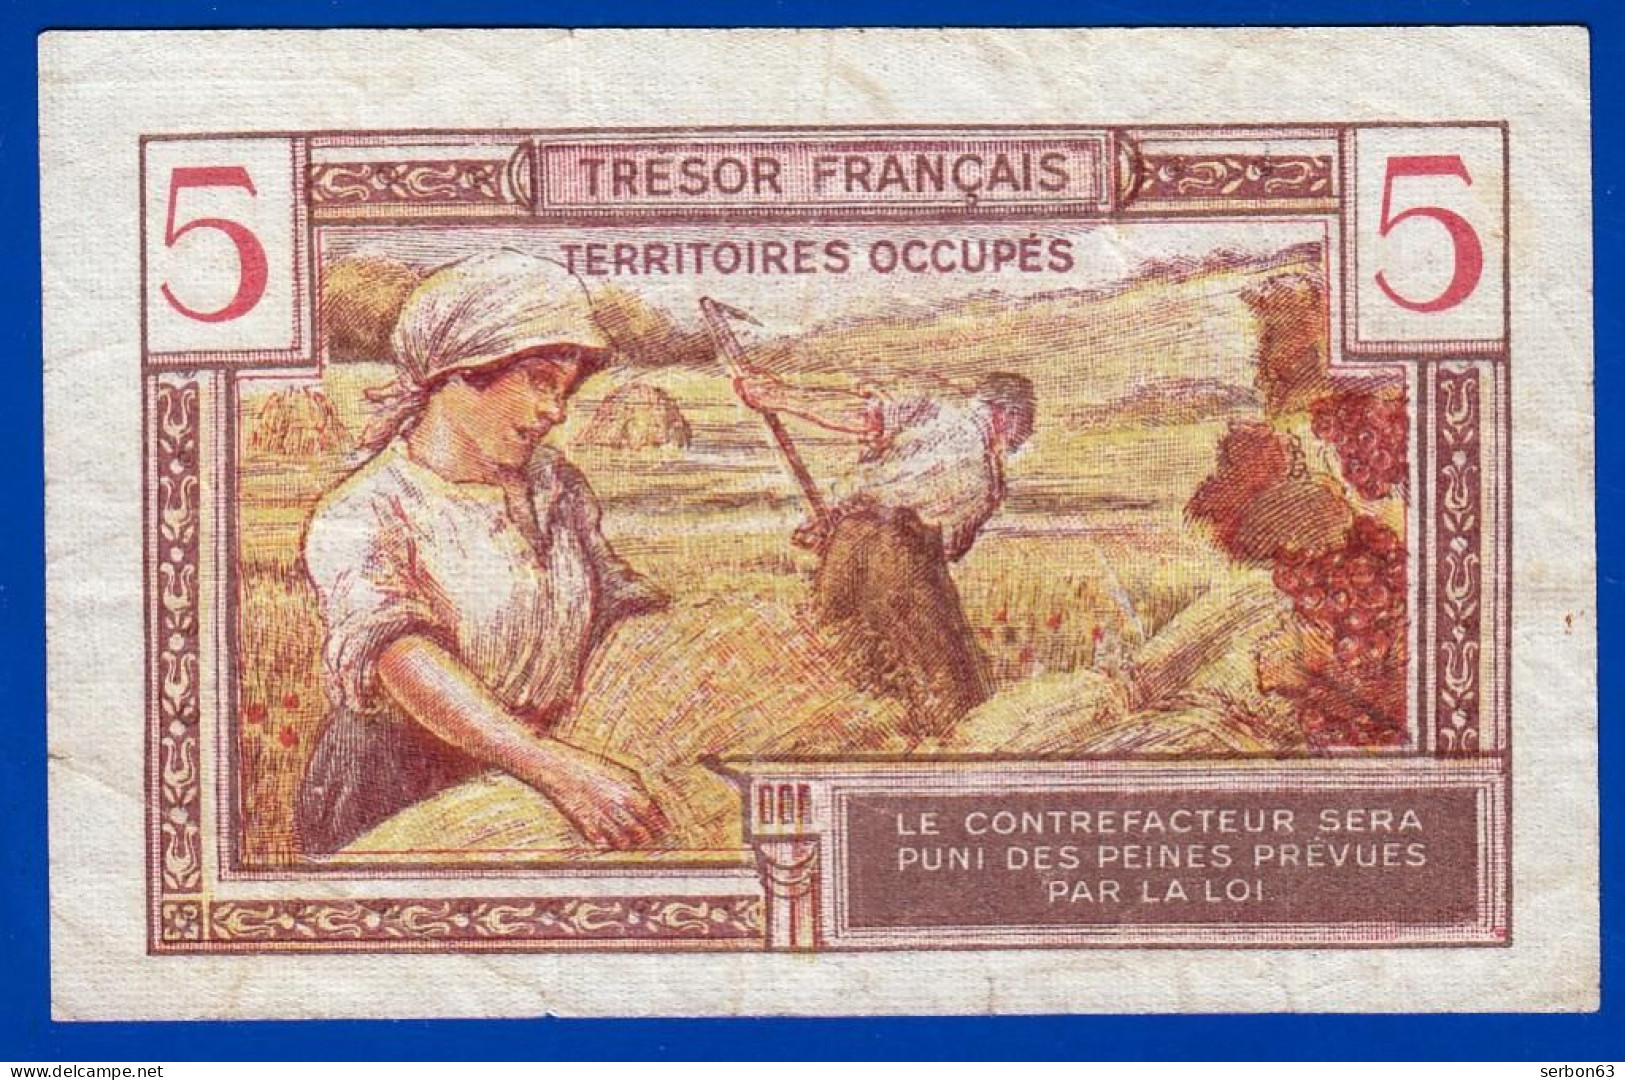 5 FRANCS BILLET DU TRÉSOR FRANÇAIS EMISSION POUR LES TERRITOIRES OCCUPES 1947 A. 02957197 Serbon63 - 1947 Tesoro Francés